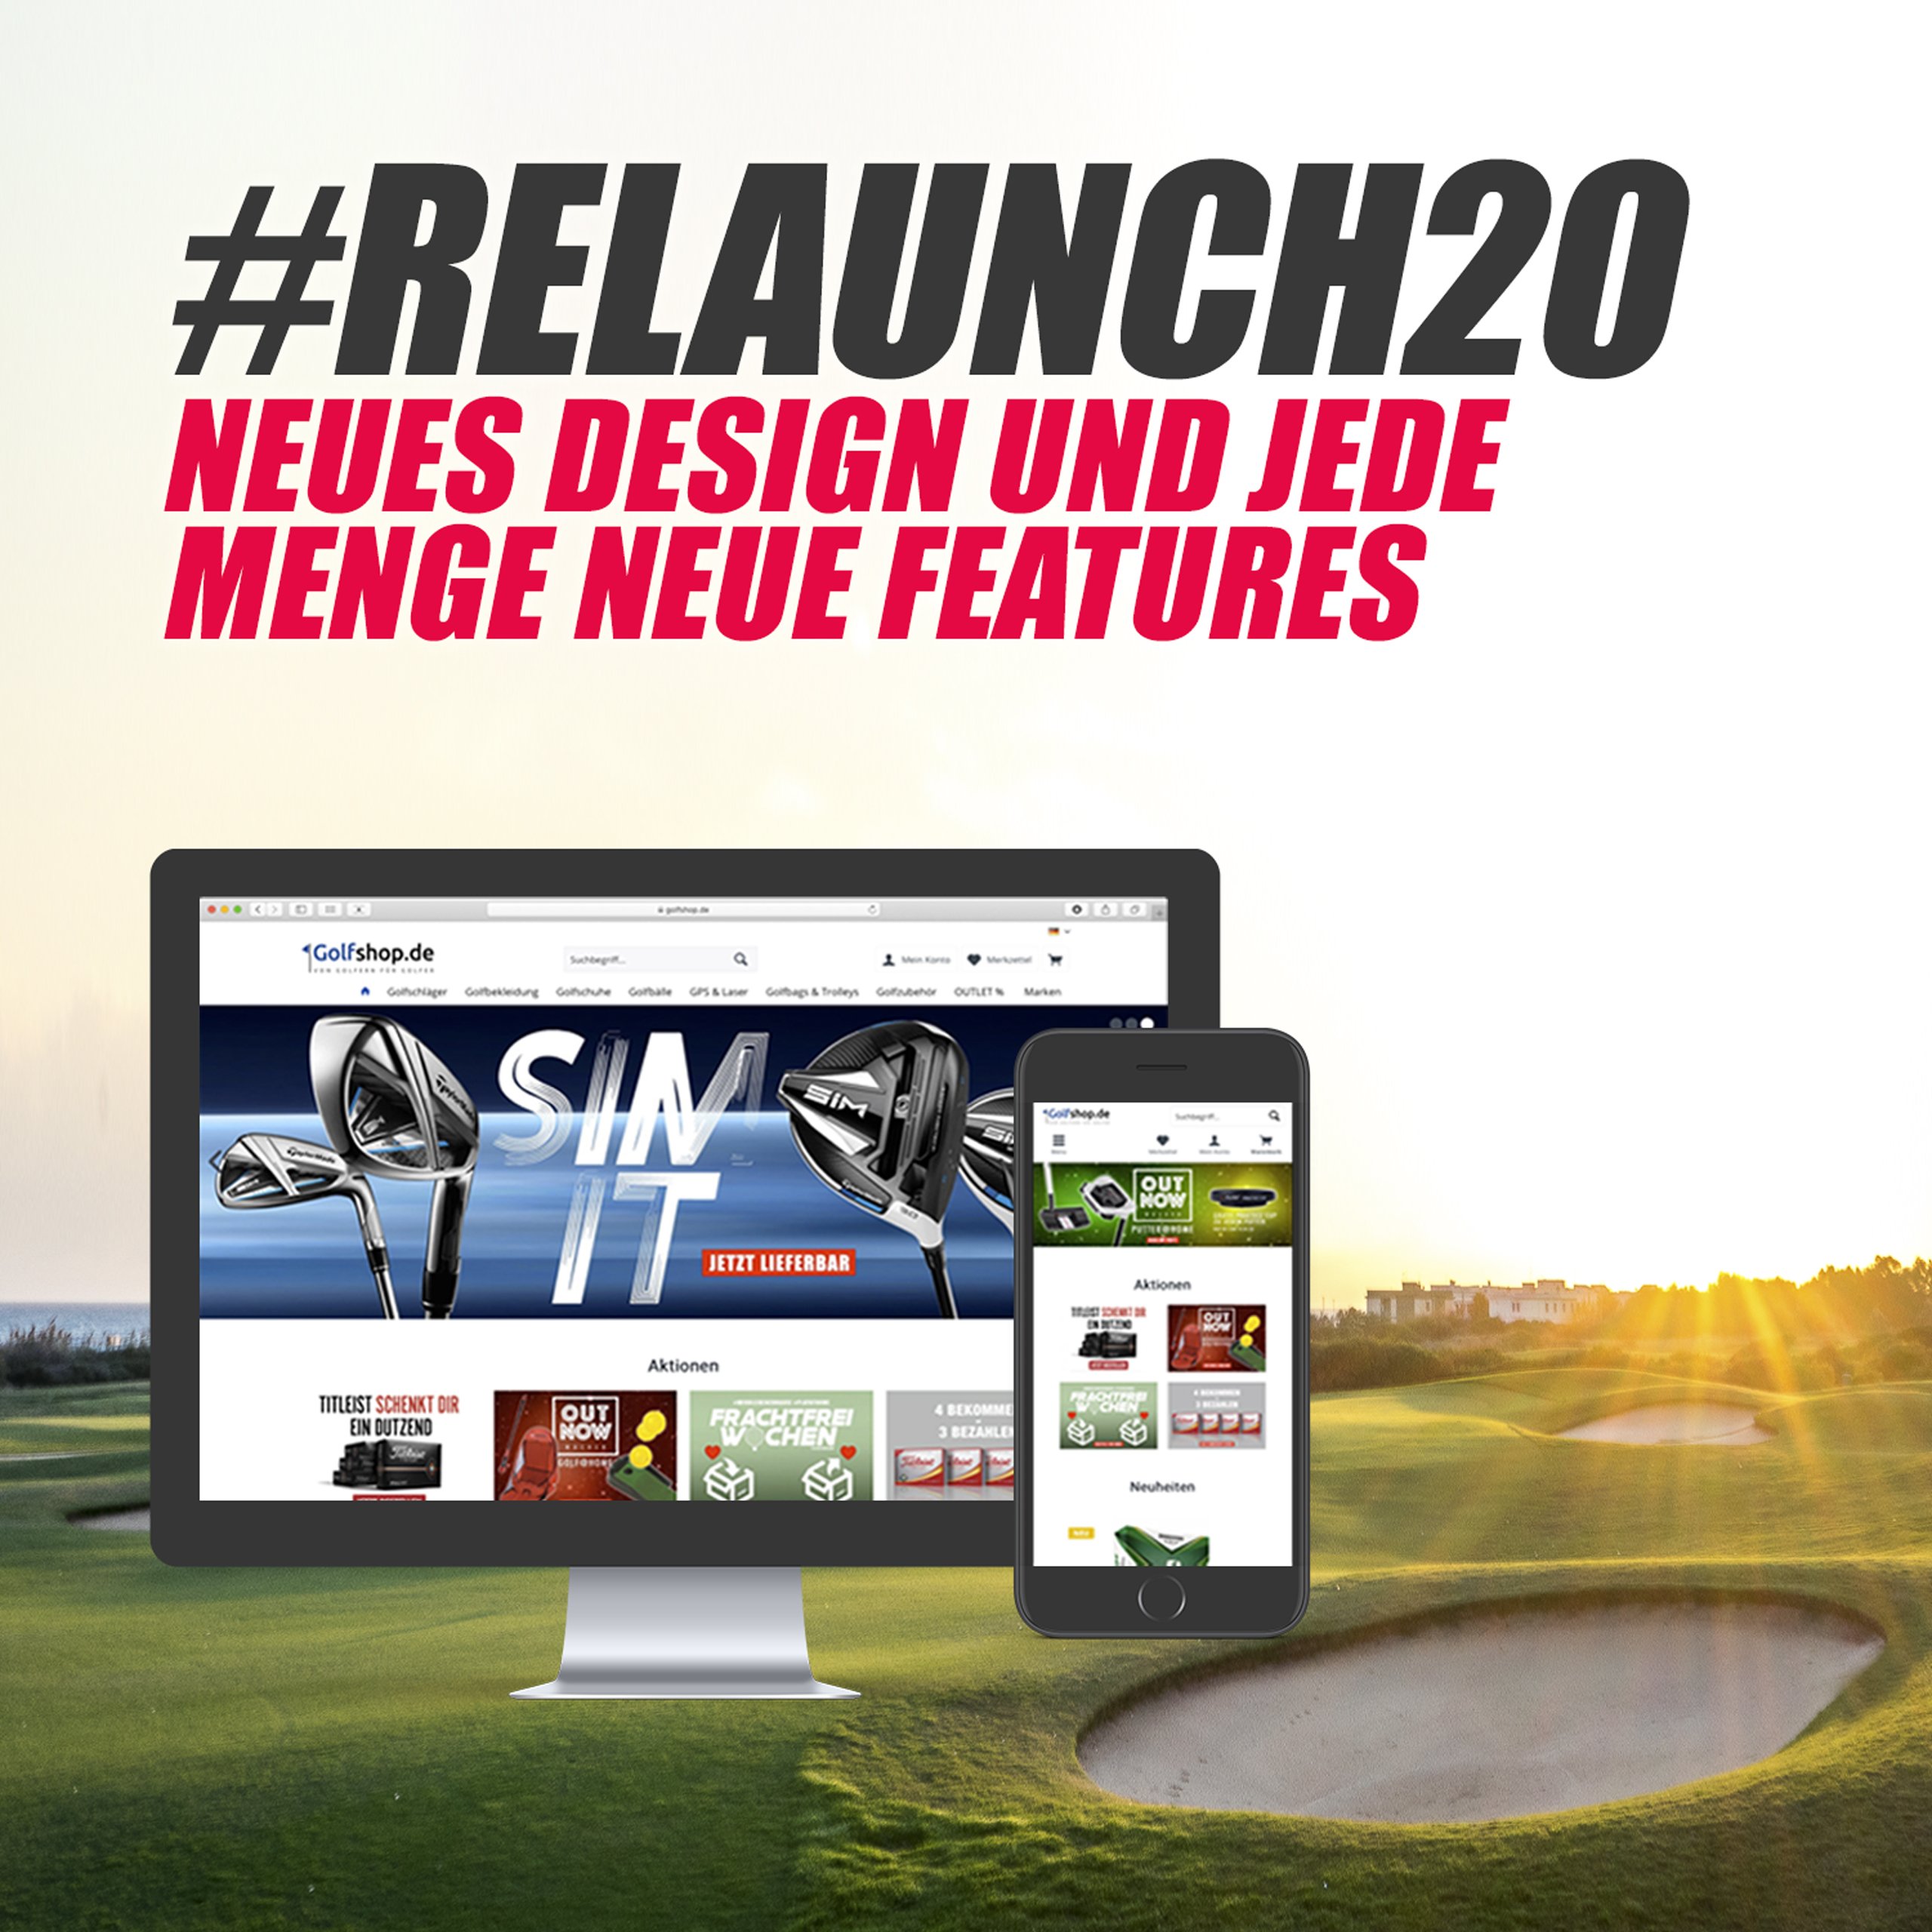 RELAUNCH20 News Golfshop.de